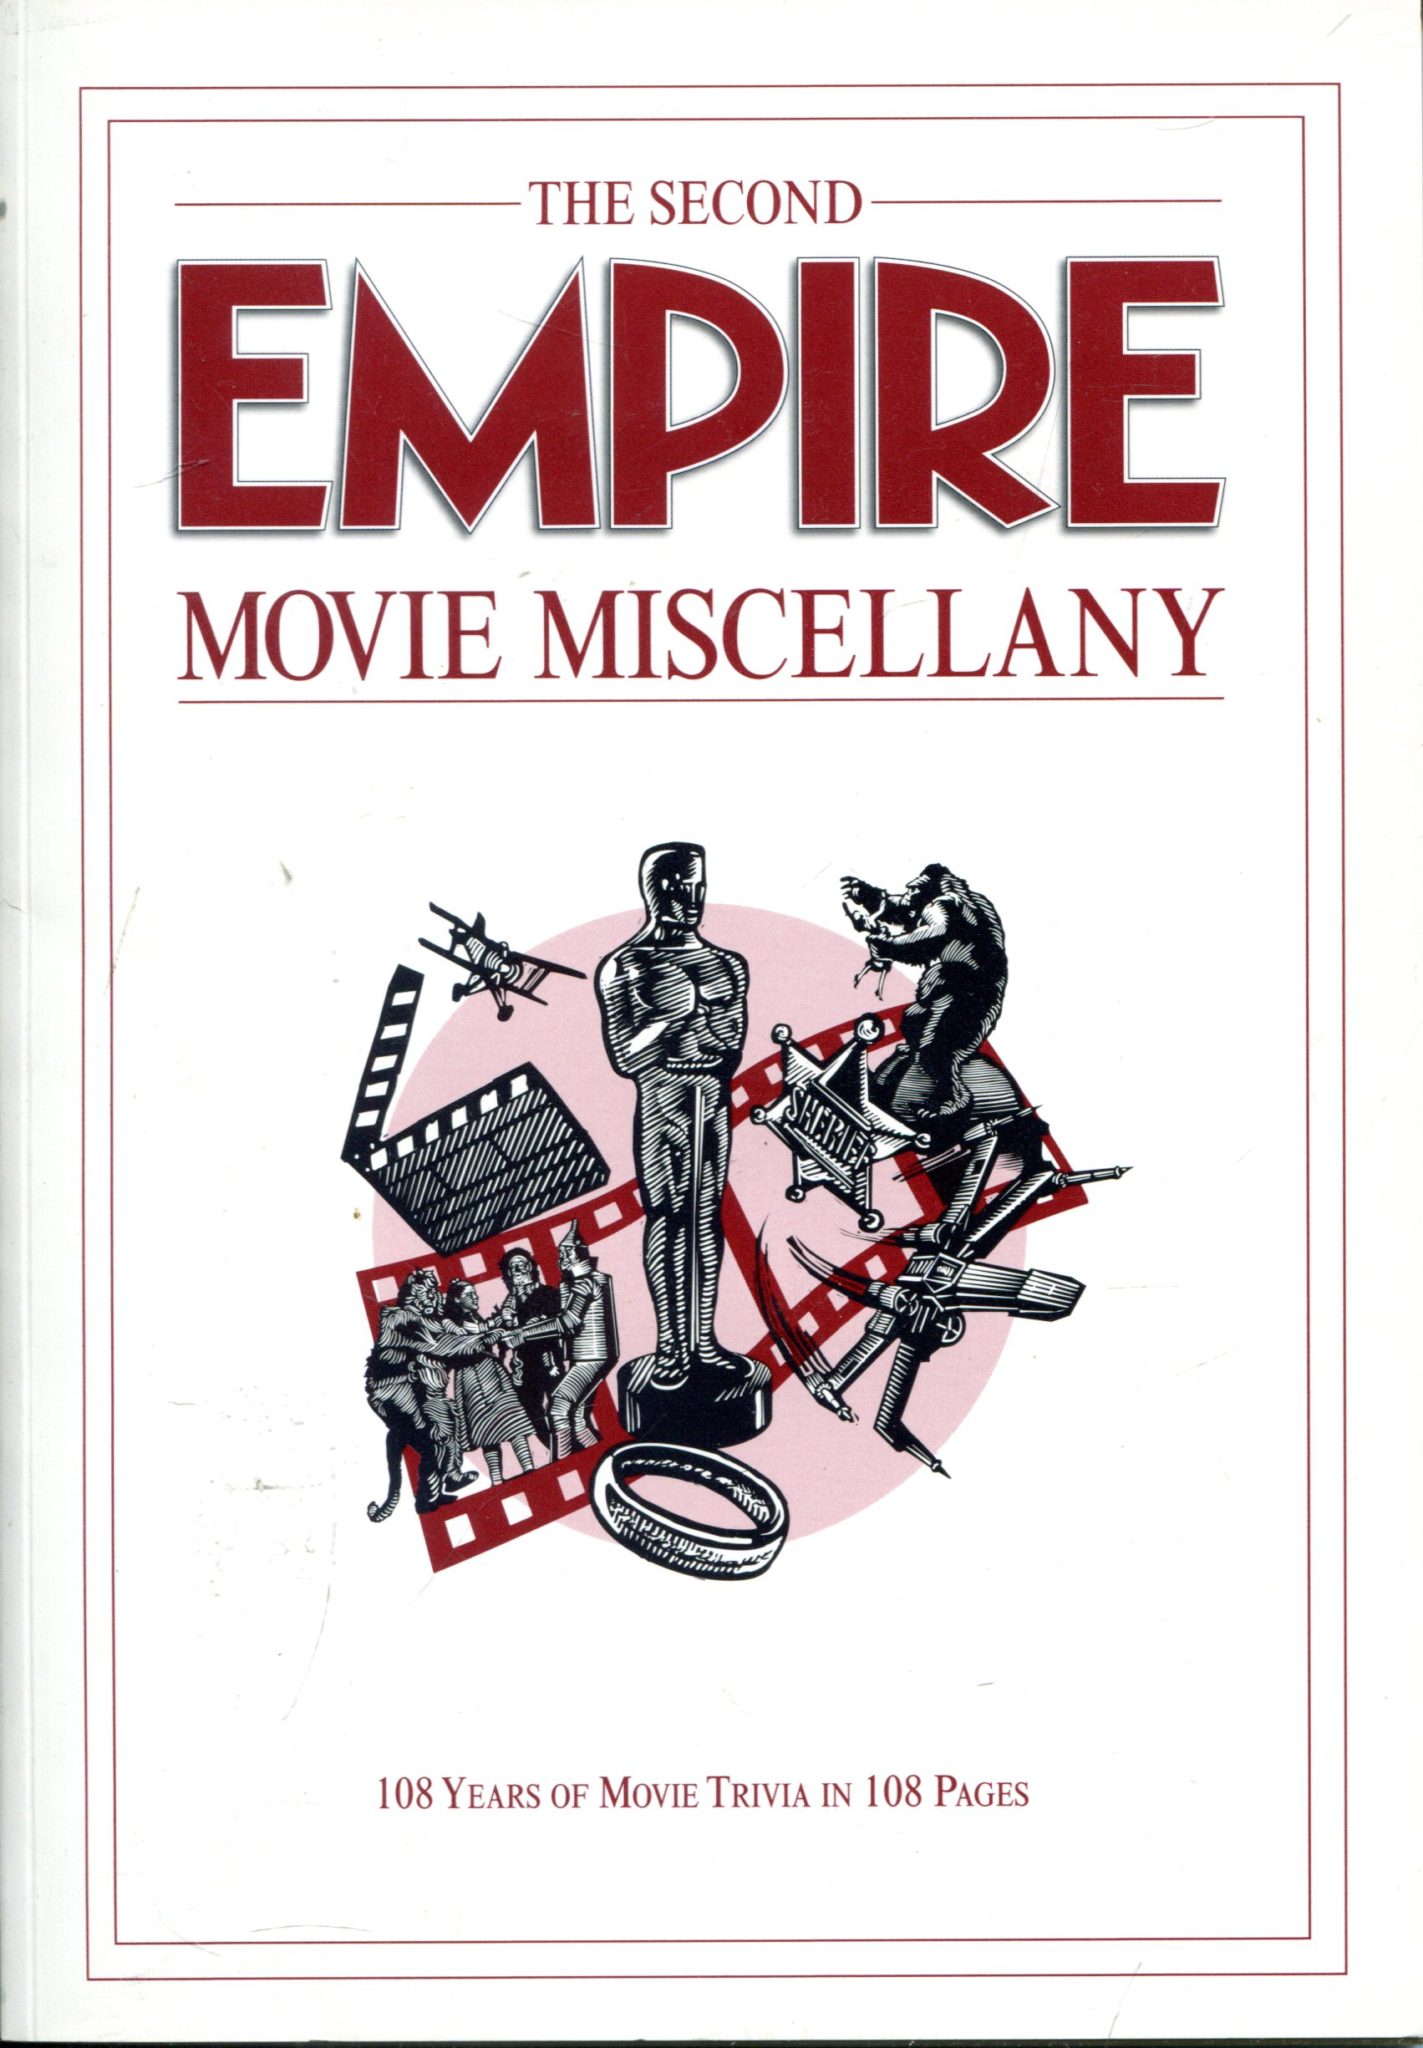 The Second Empire Movie Miscellany Kim Newman i Ian Freer